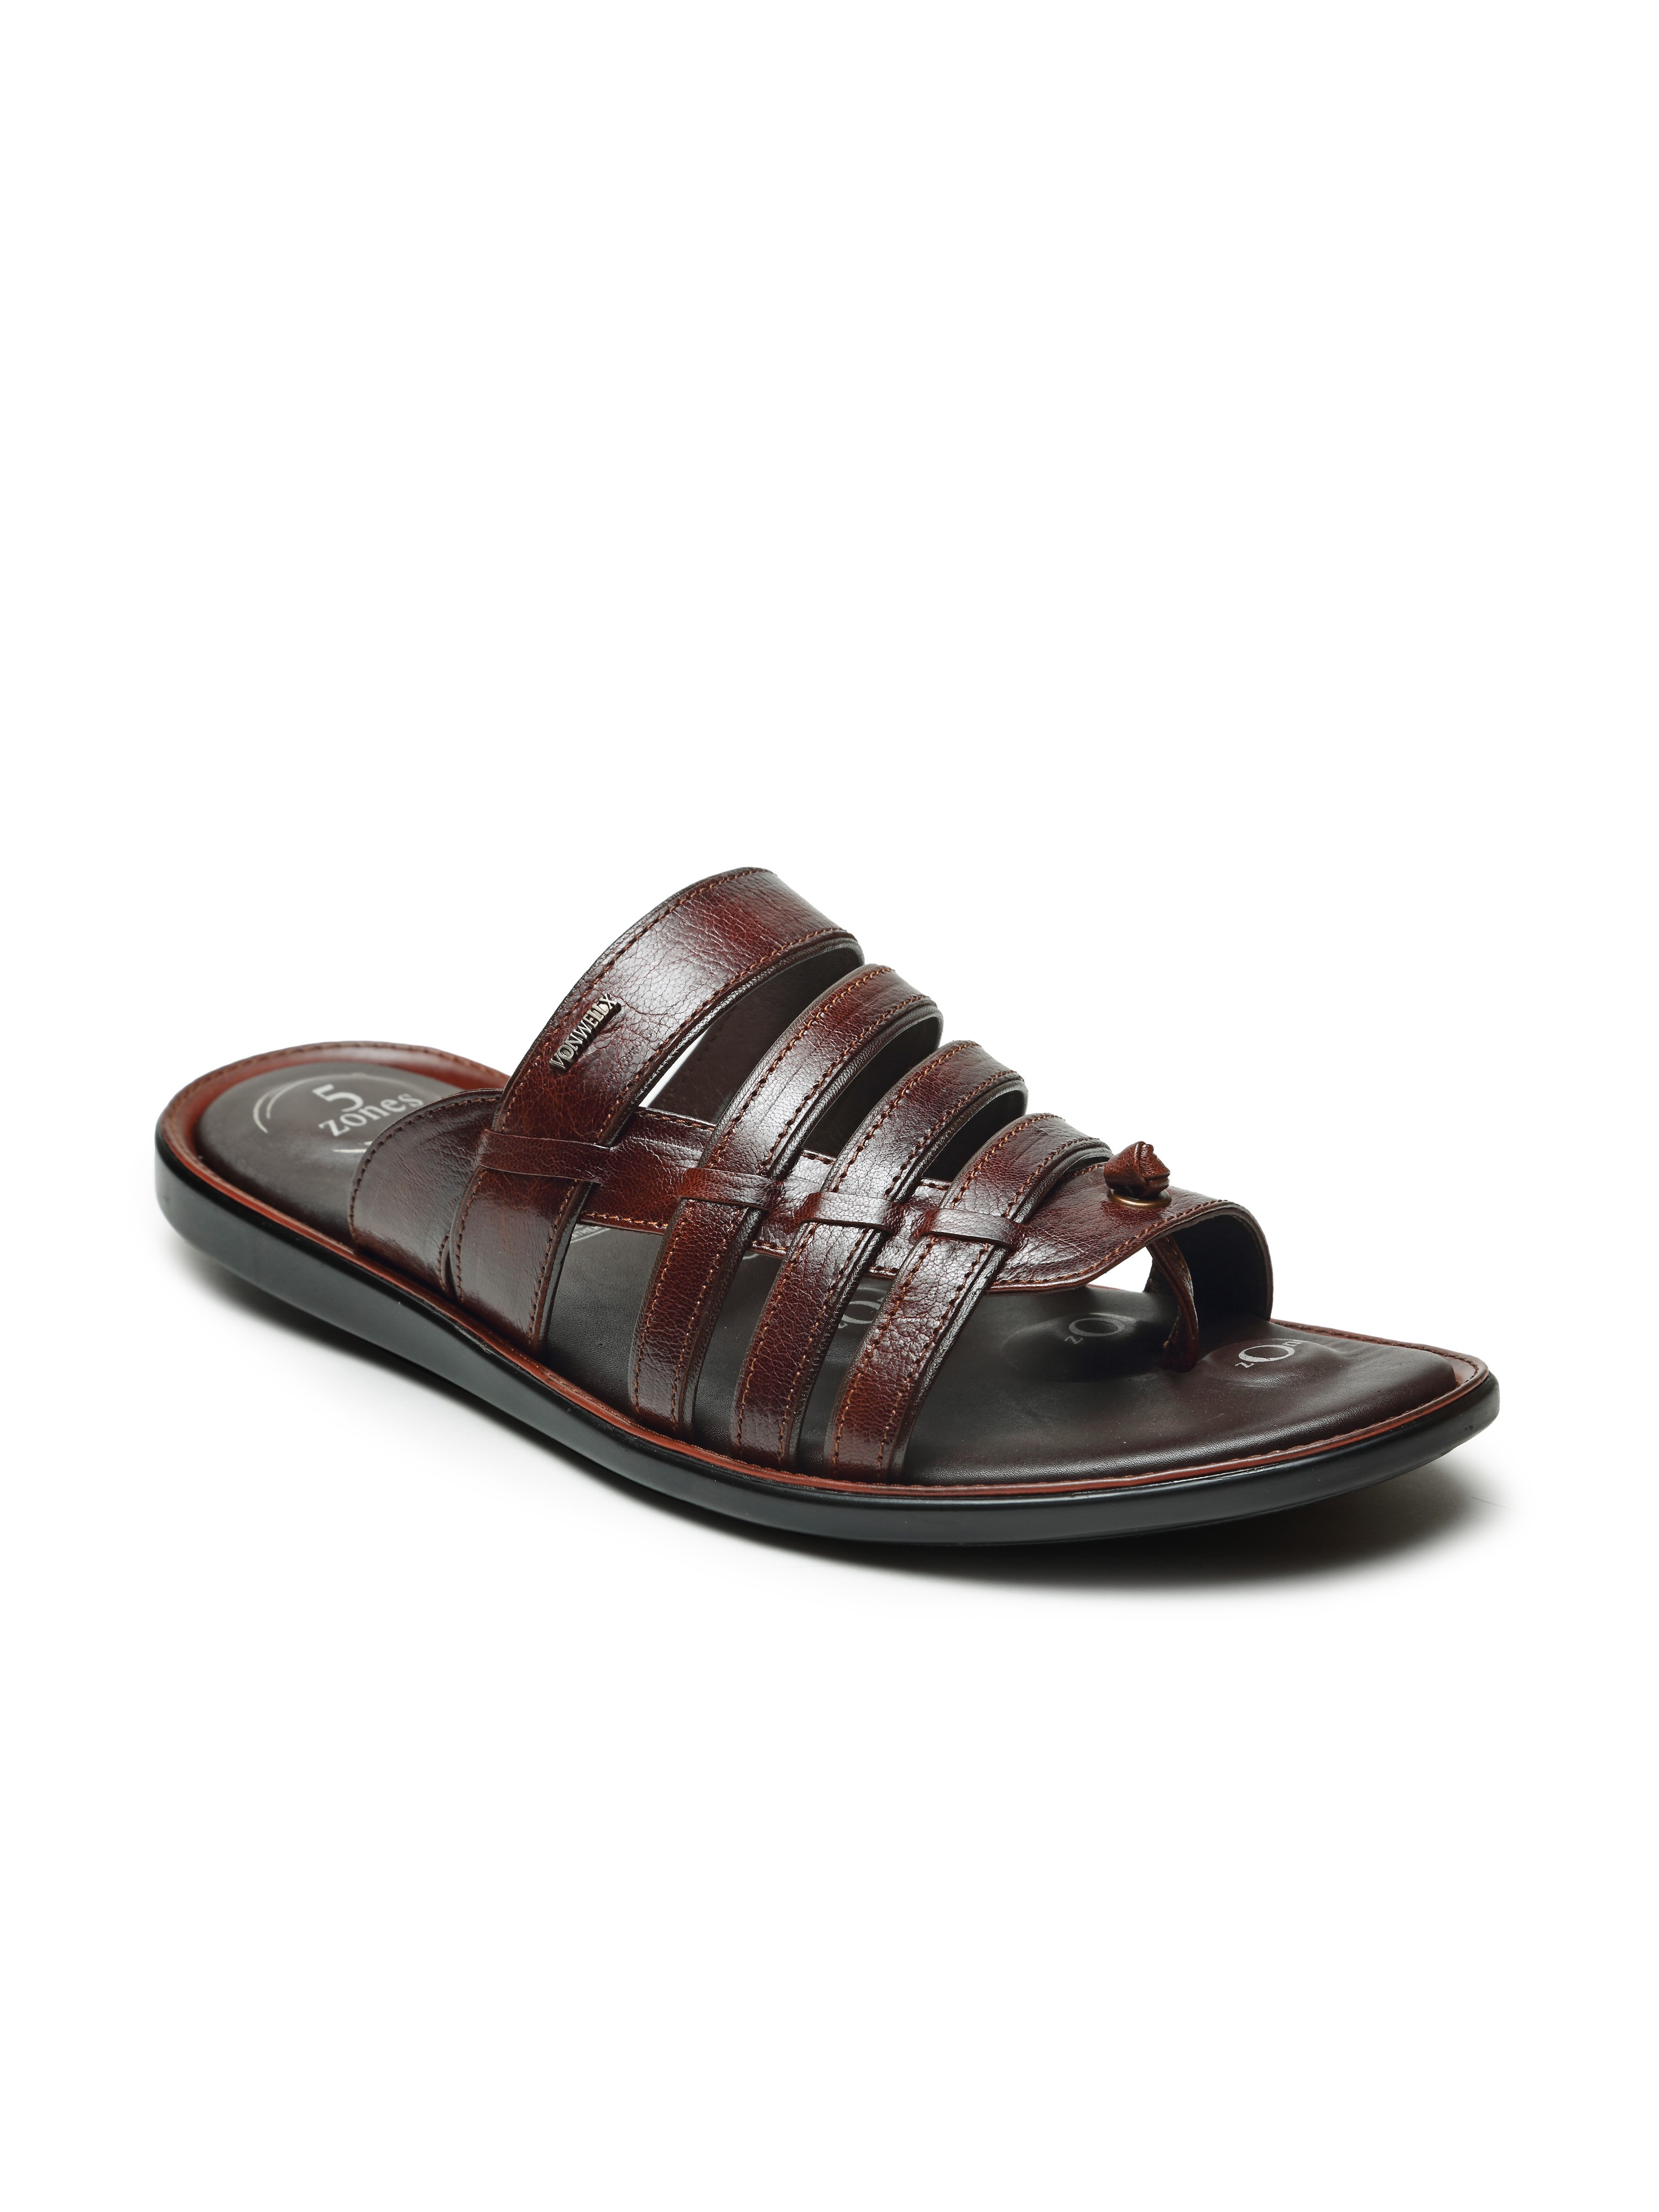 Buy VON WELLX GERMANY comfort men's tan slippers HARLAN In Delhi